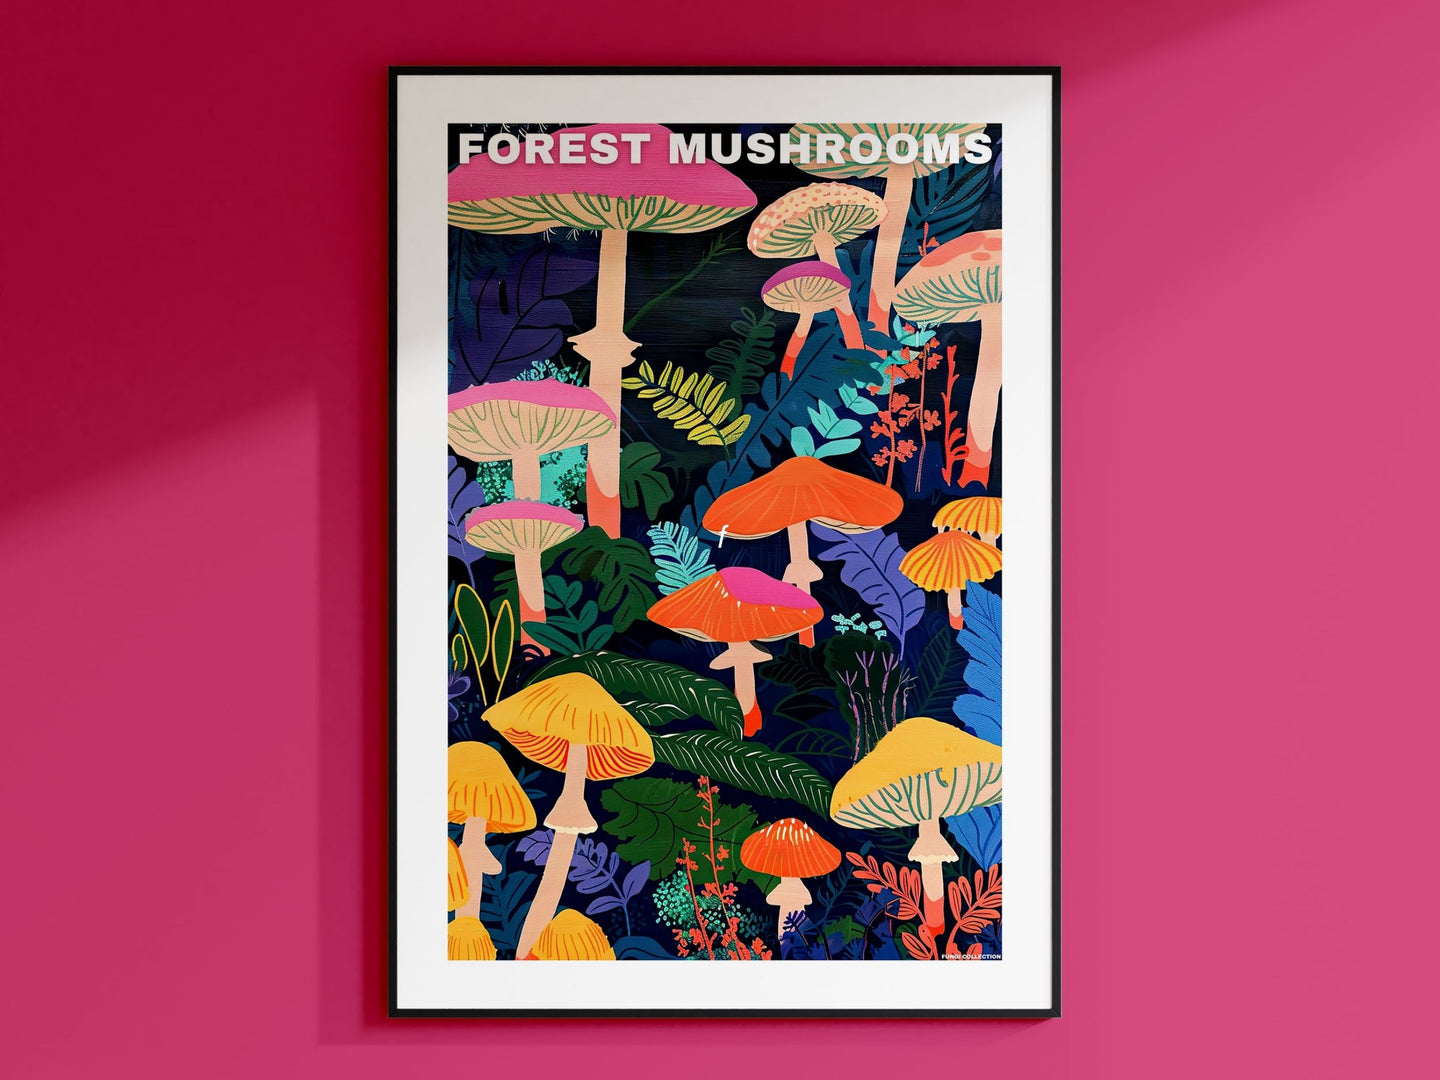 Mushroom Prints, Mushroom Poster, Mushroom Illustrations, Mushroom Decor, Botanical Prints, Vintage Mushroom, Mushroom Wall Art, Retro Art